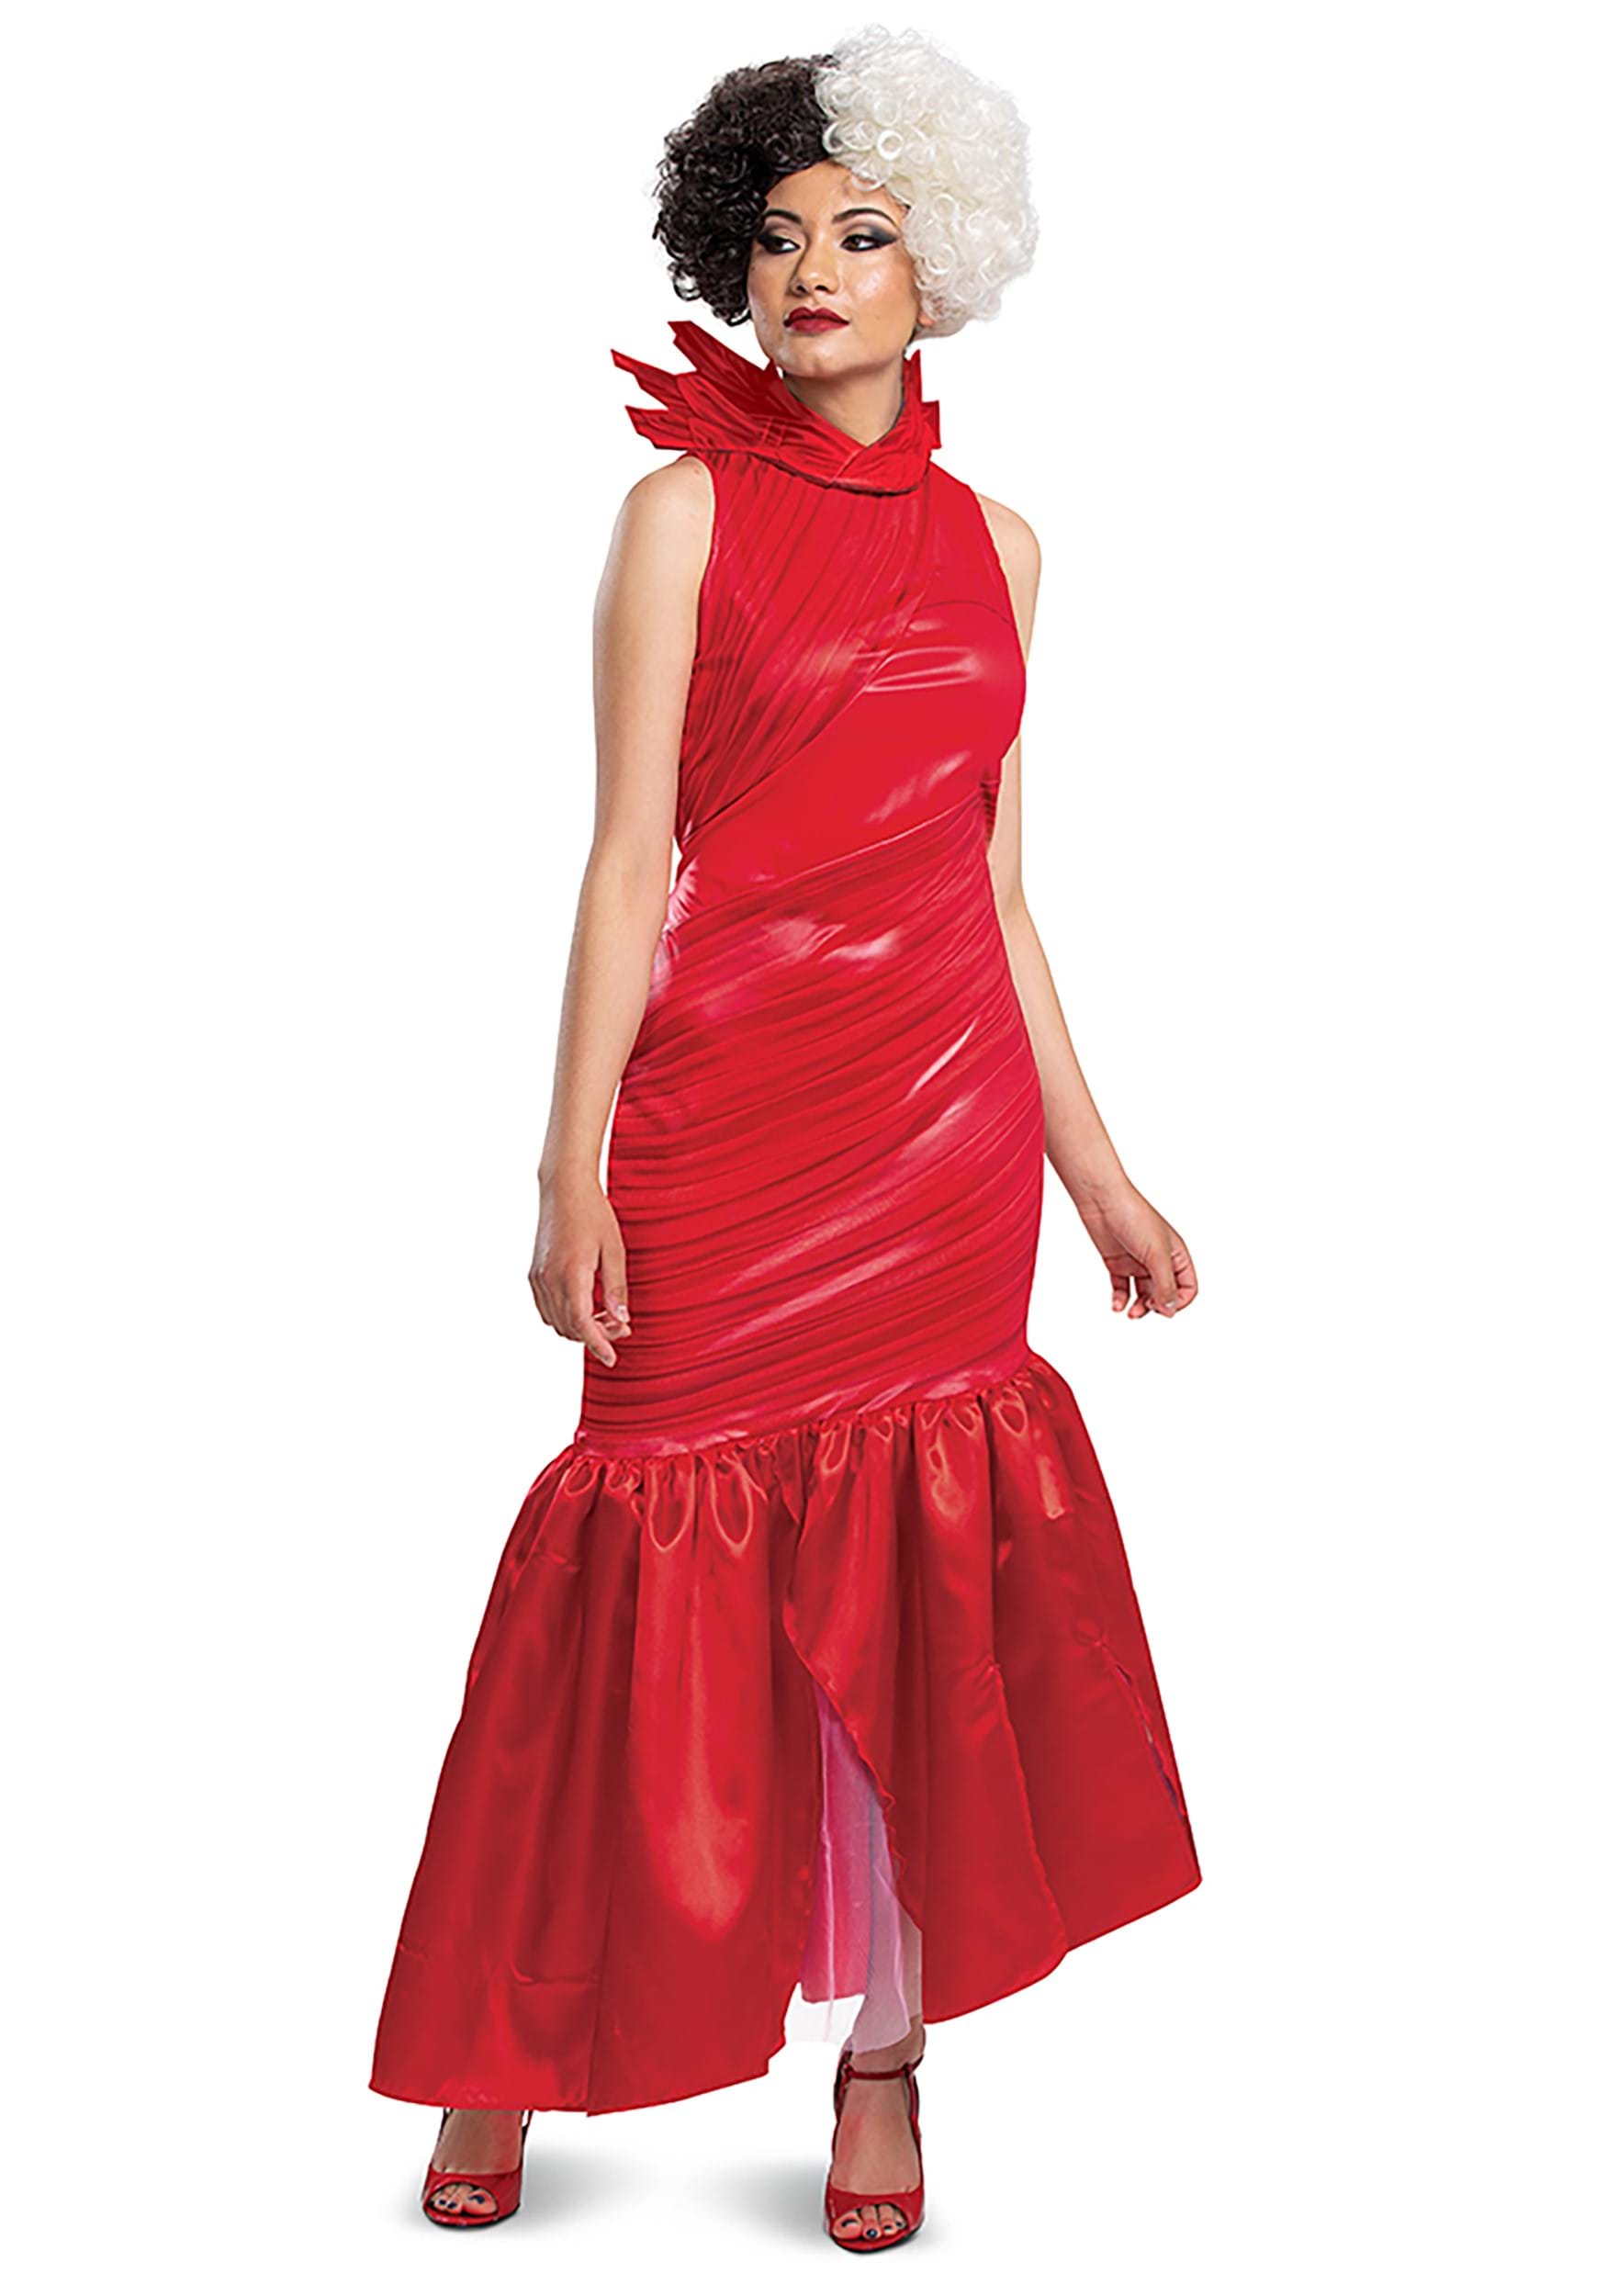 Image of Adult Cruella Red Dress Classic Costume ID DI118539-M